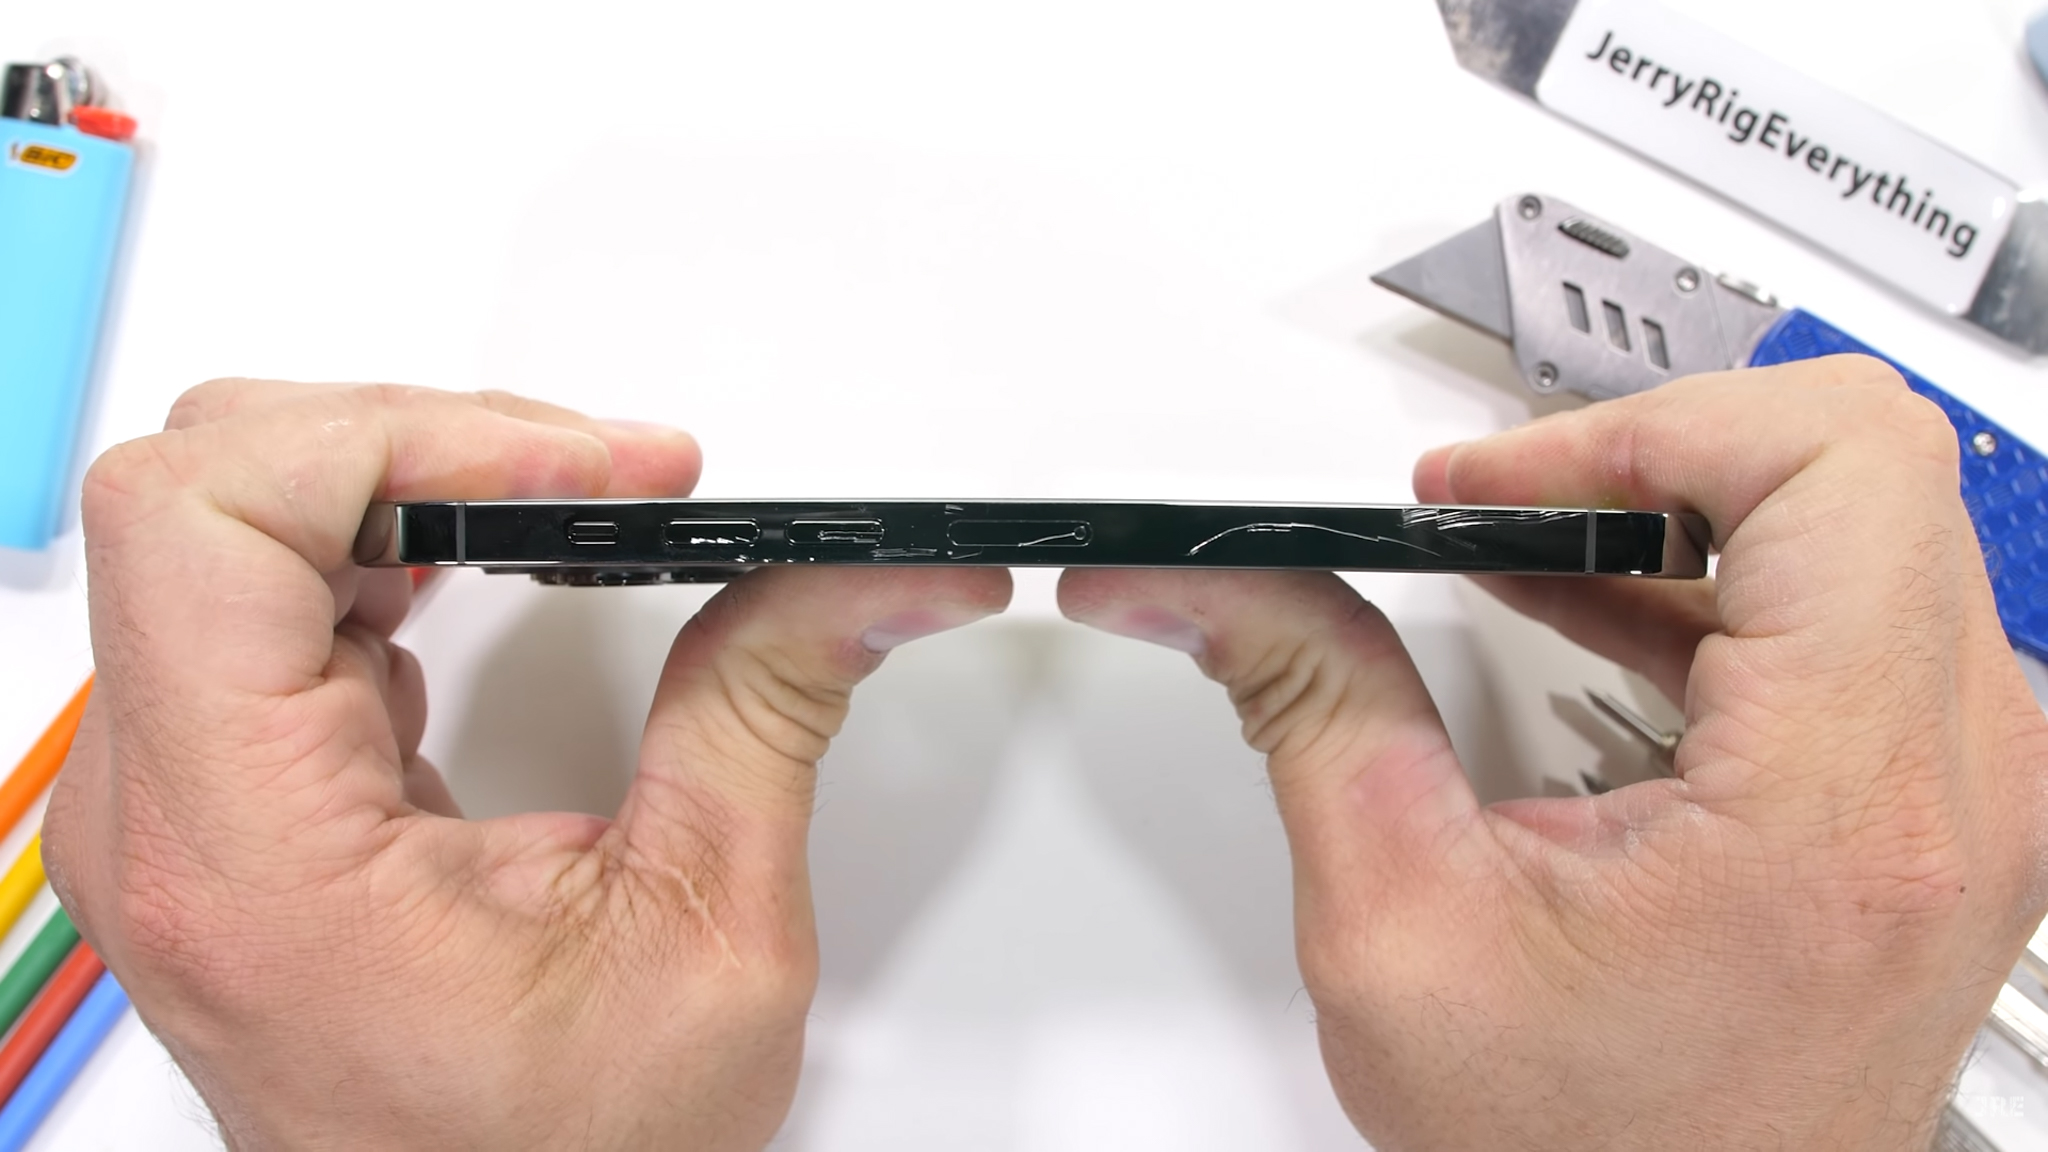 Kiểm tra độ bền iPhone 13 Pro Max: Smartphone cao cấp cứng cáp nhất hiện tại trên thị trường.